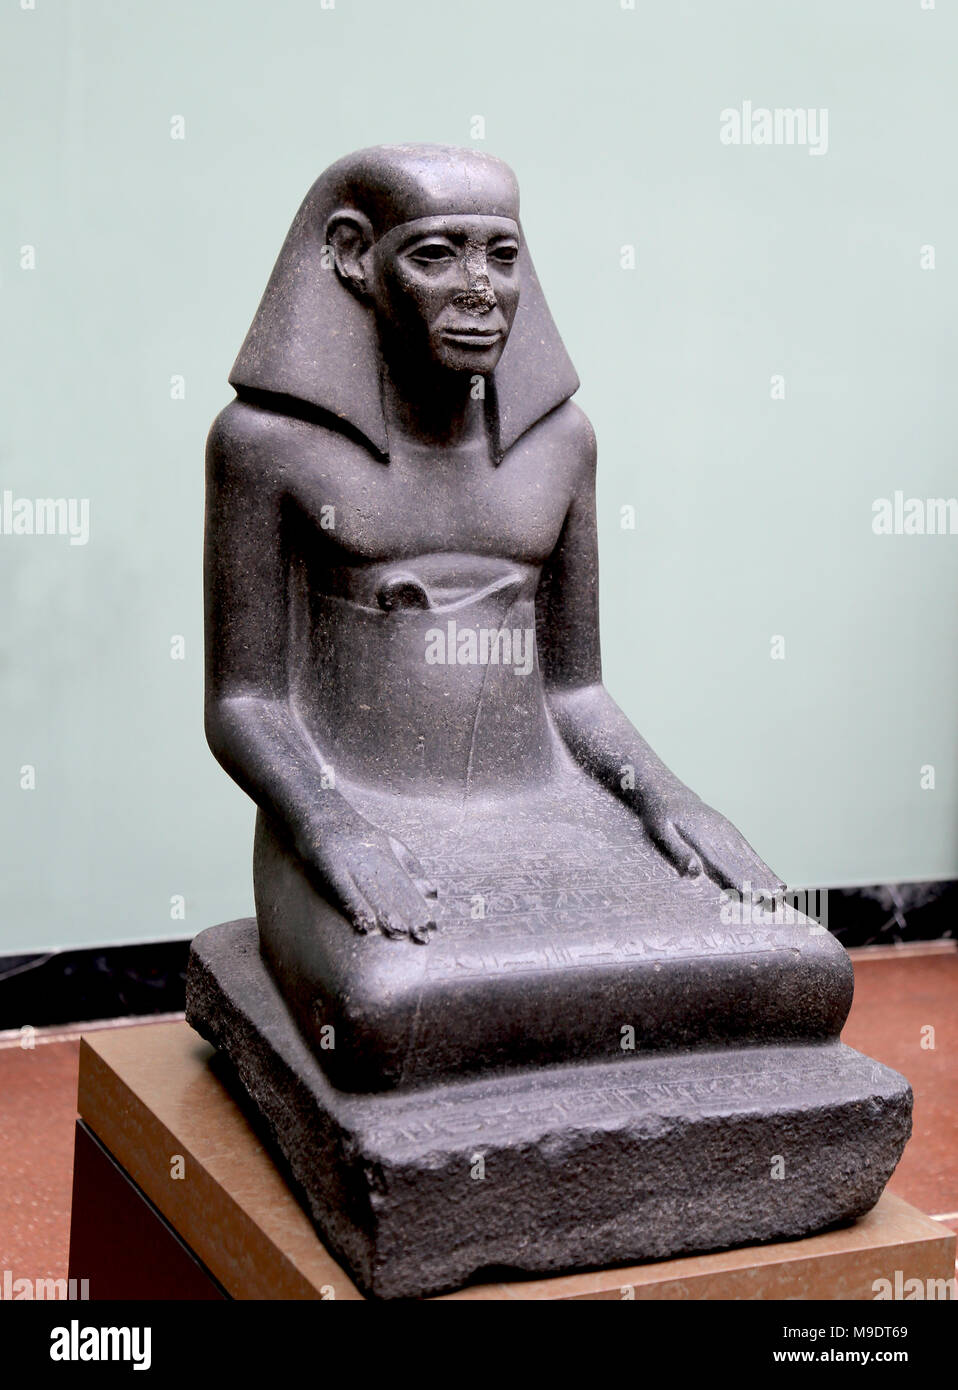 Gebu, maestro del tesoro reale. Statua in granito c. 1700 BC. Xiii dinastia, regno di Mezzo. Dal tempio di Amon, Karnak, Egitto. Foto Stock